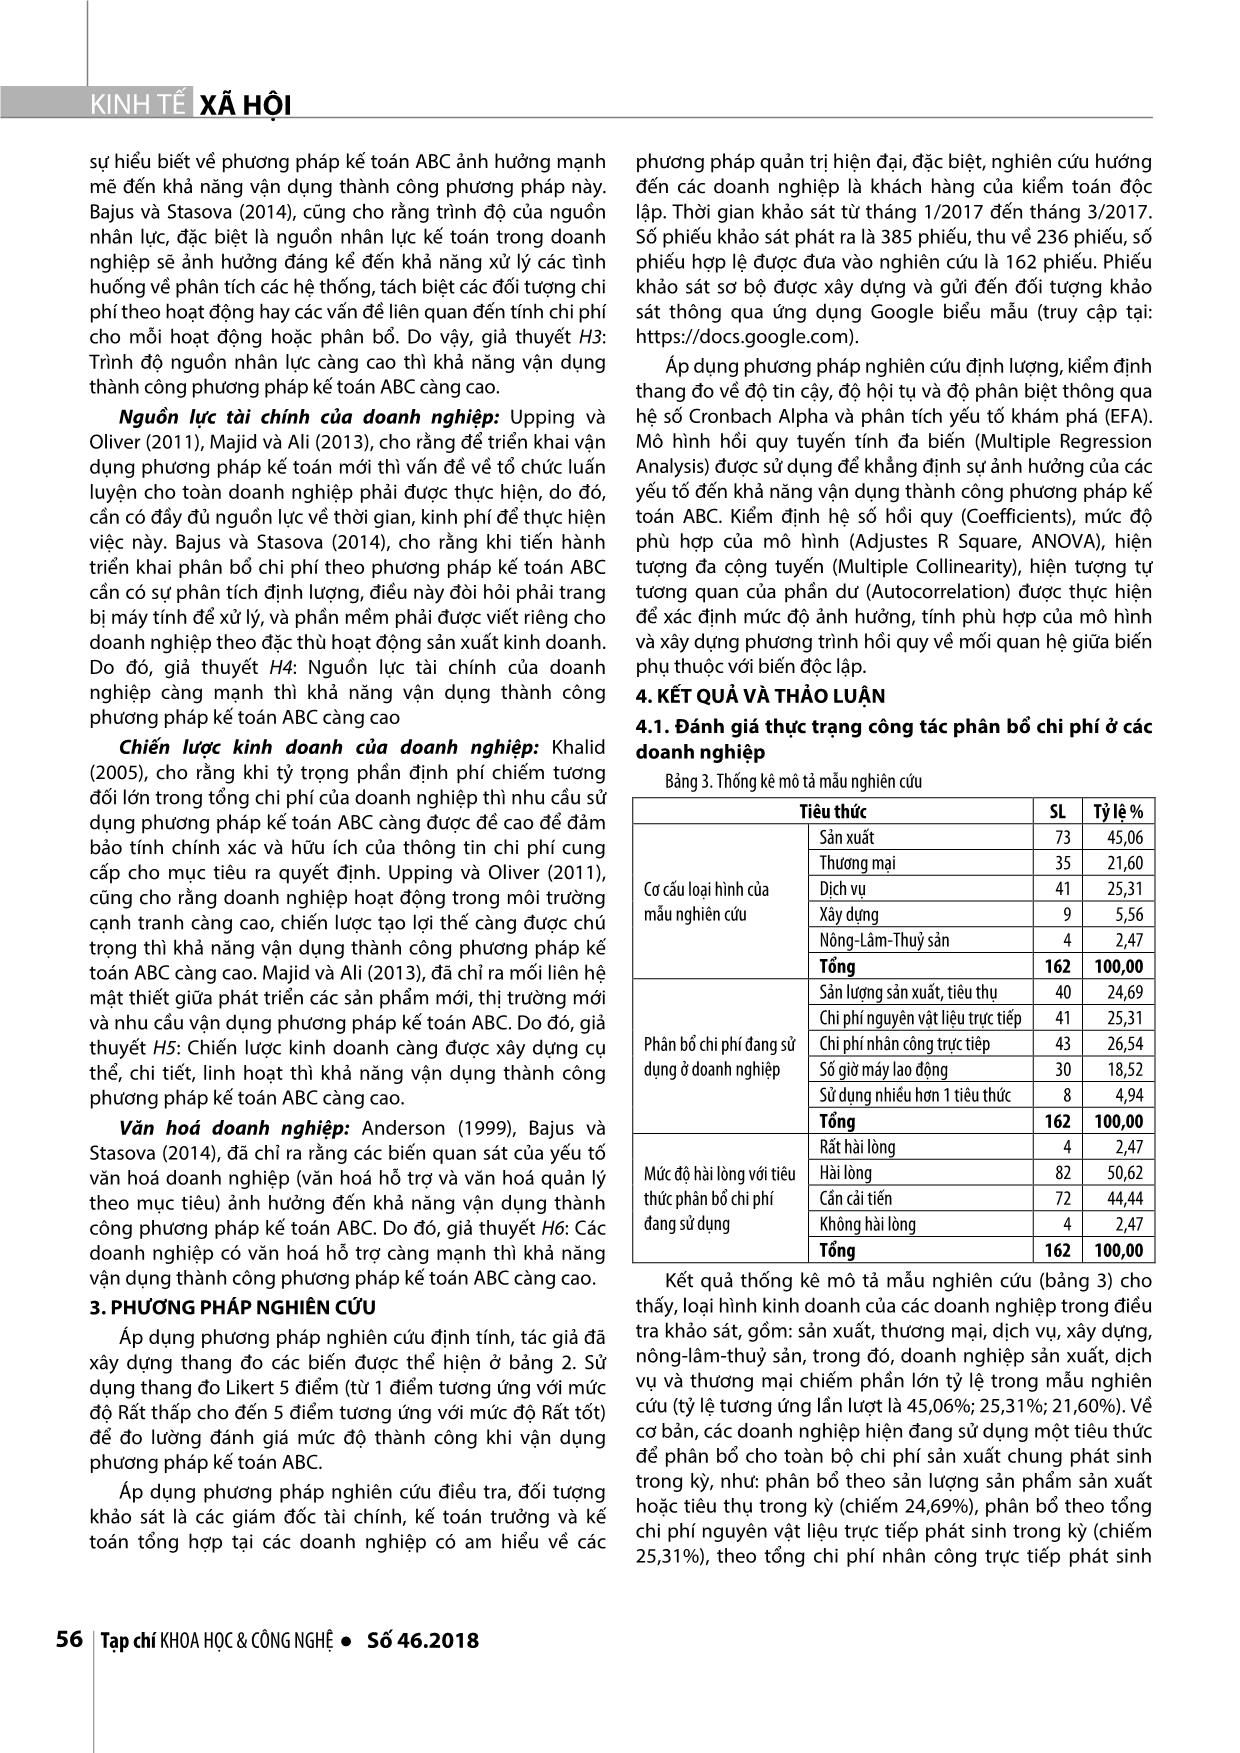 Yếu tố ảnh hưởng đến khả năng vận dụng phương pháp kế toán abc: nghiên cứu trường hợp các doanh nghiệp Việt Nam trang 5